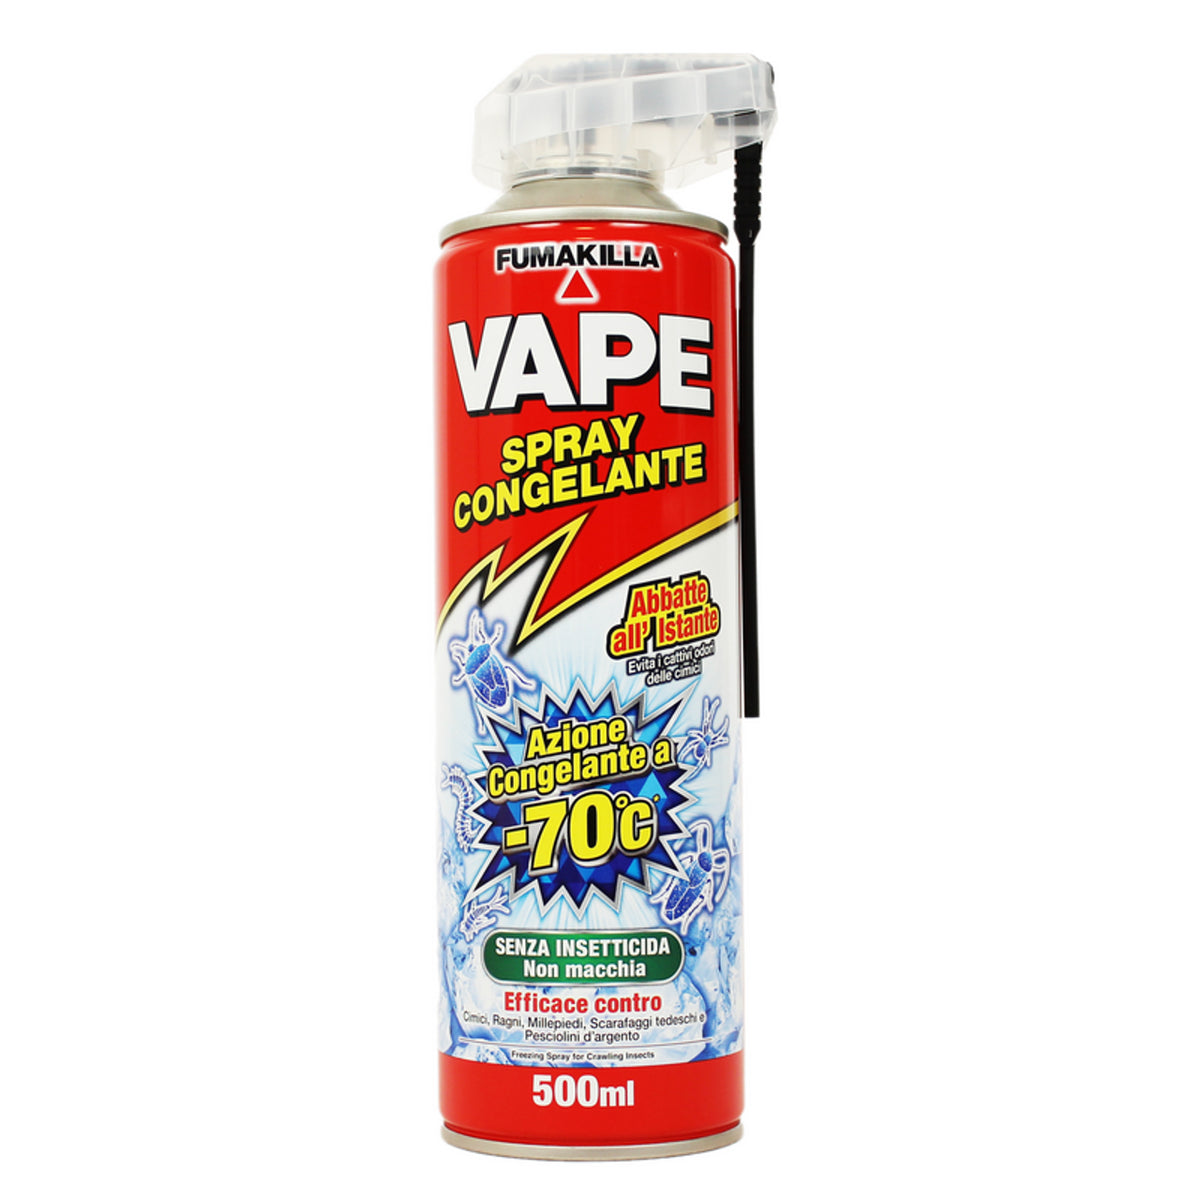 Vape Spray Congelante Abbatte All'Istante Senza Insetticida 500 ml